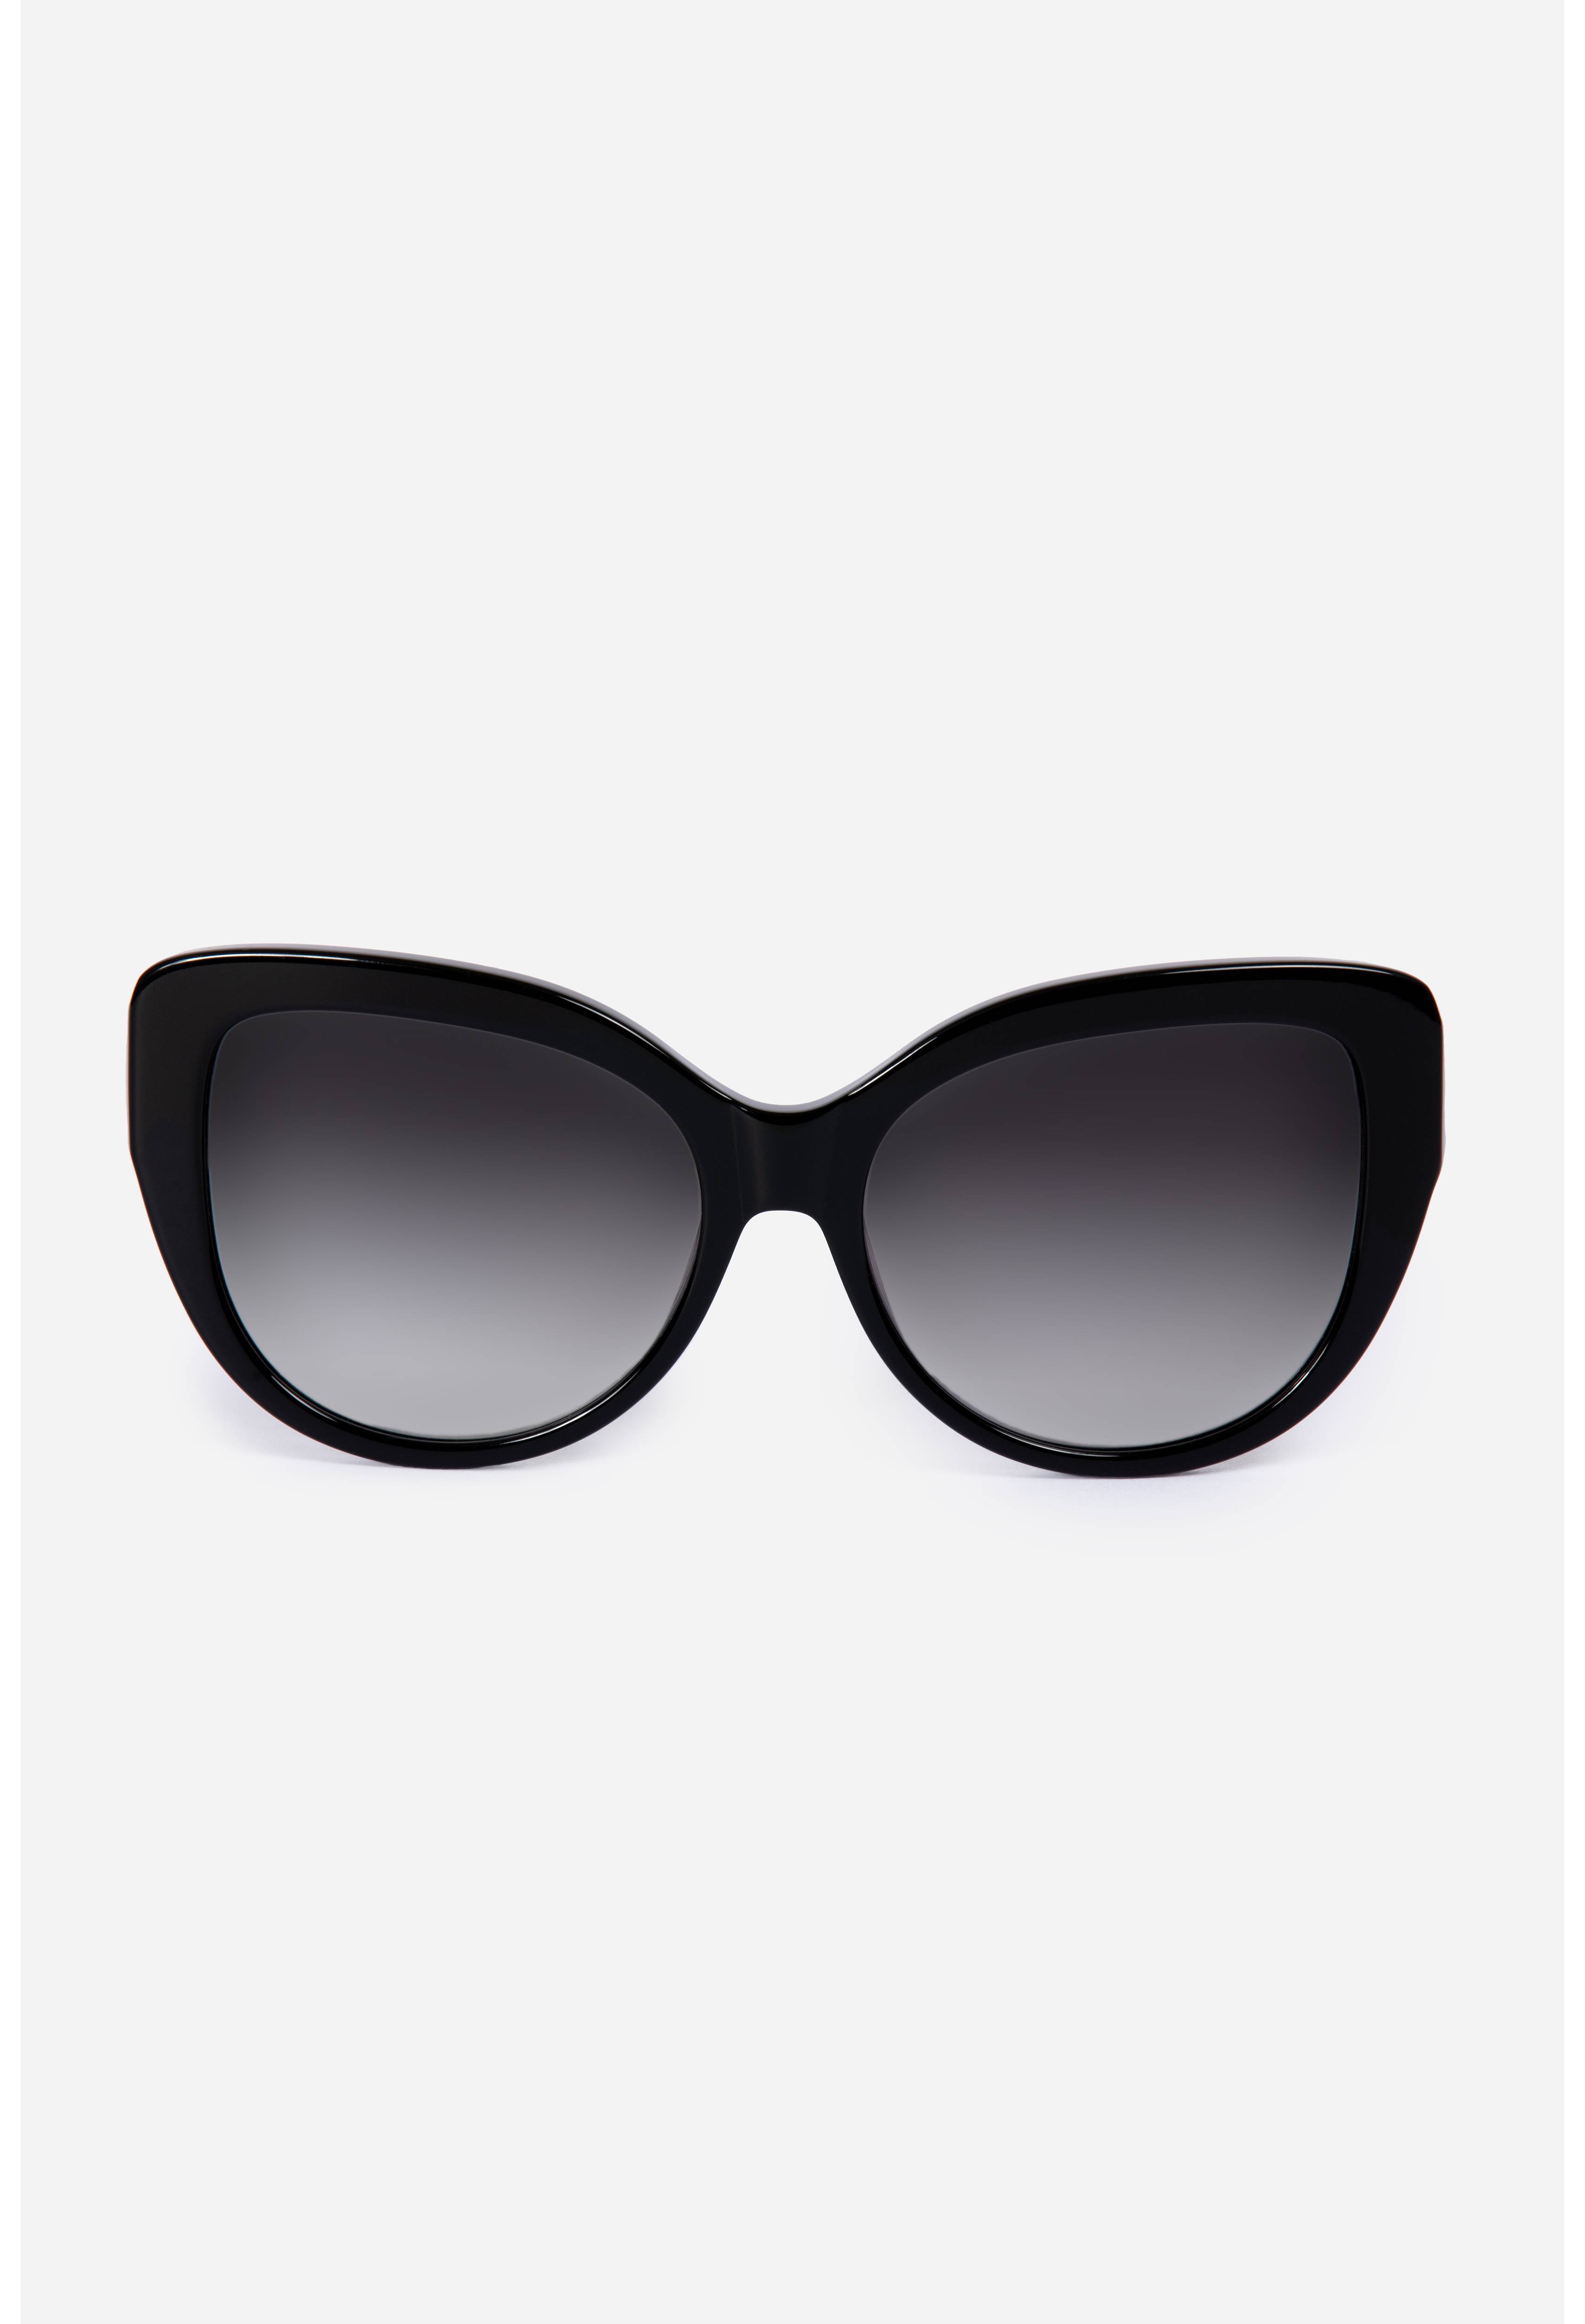 Sydnee Sunglasses Black Printed, , large image number 1